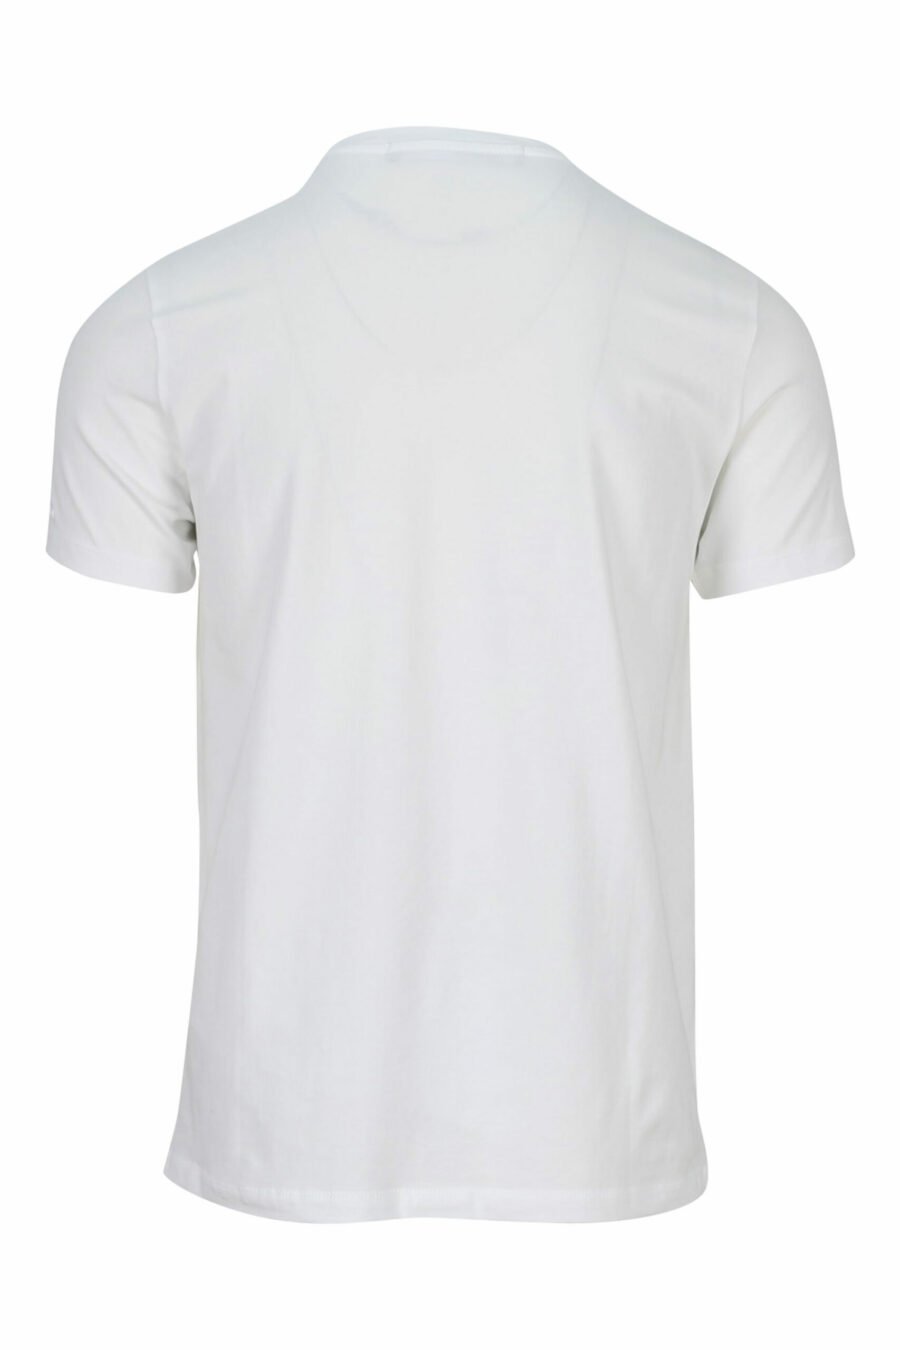 Weißes T-Shirt mit mehrfarbigem "karl silhouette" Maxilogo - 4062226400701 skaliert